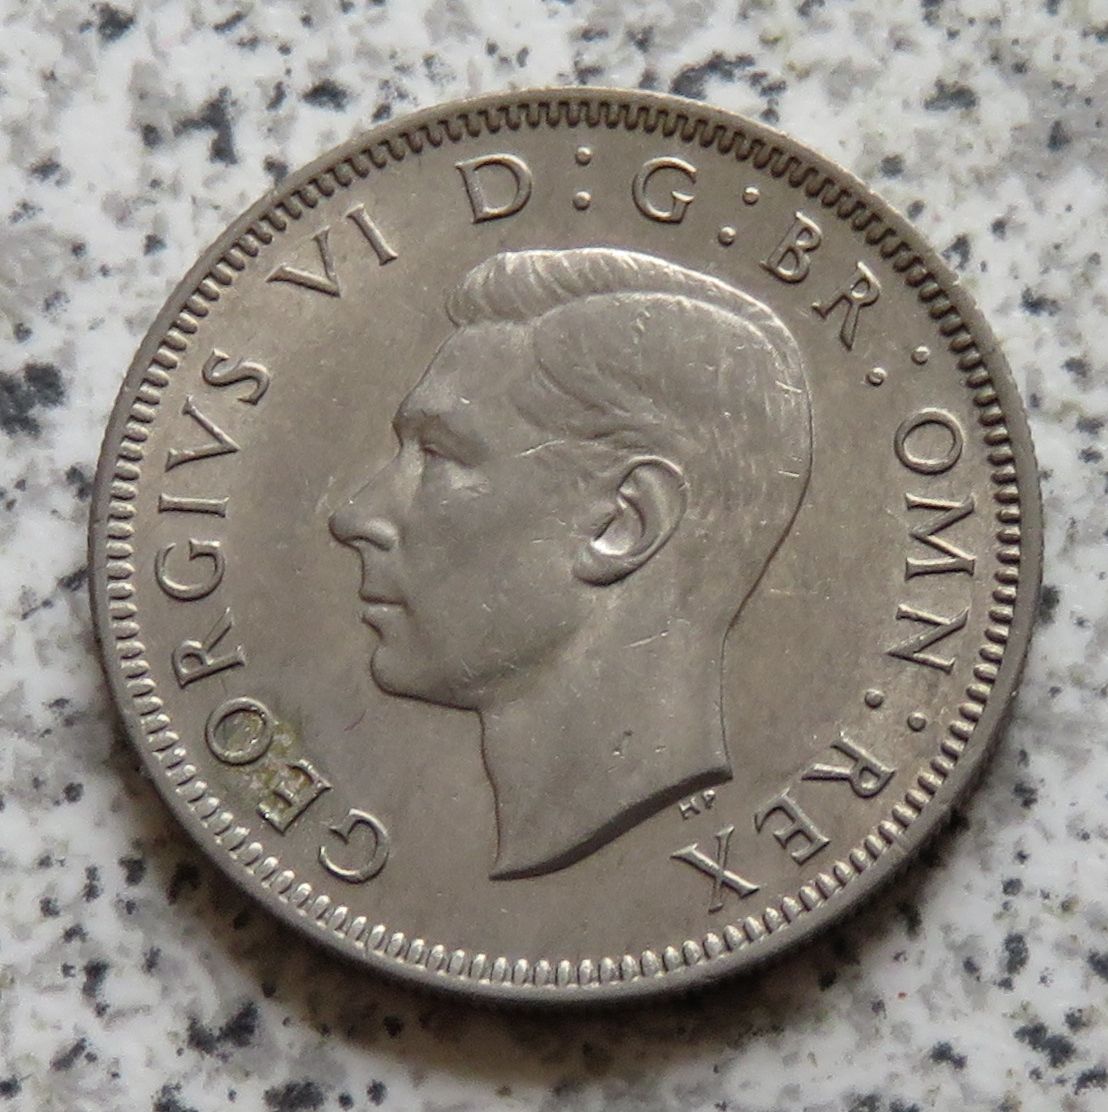  Großbritannien 1 Shilling 1950, Schottisch, Erhaltung   